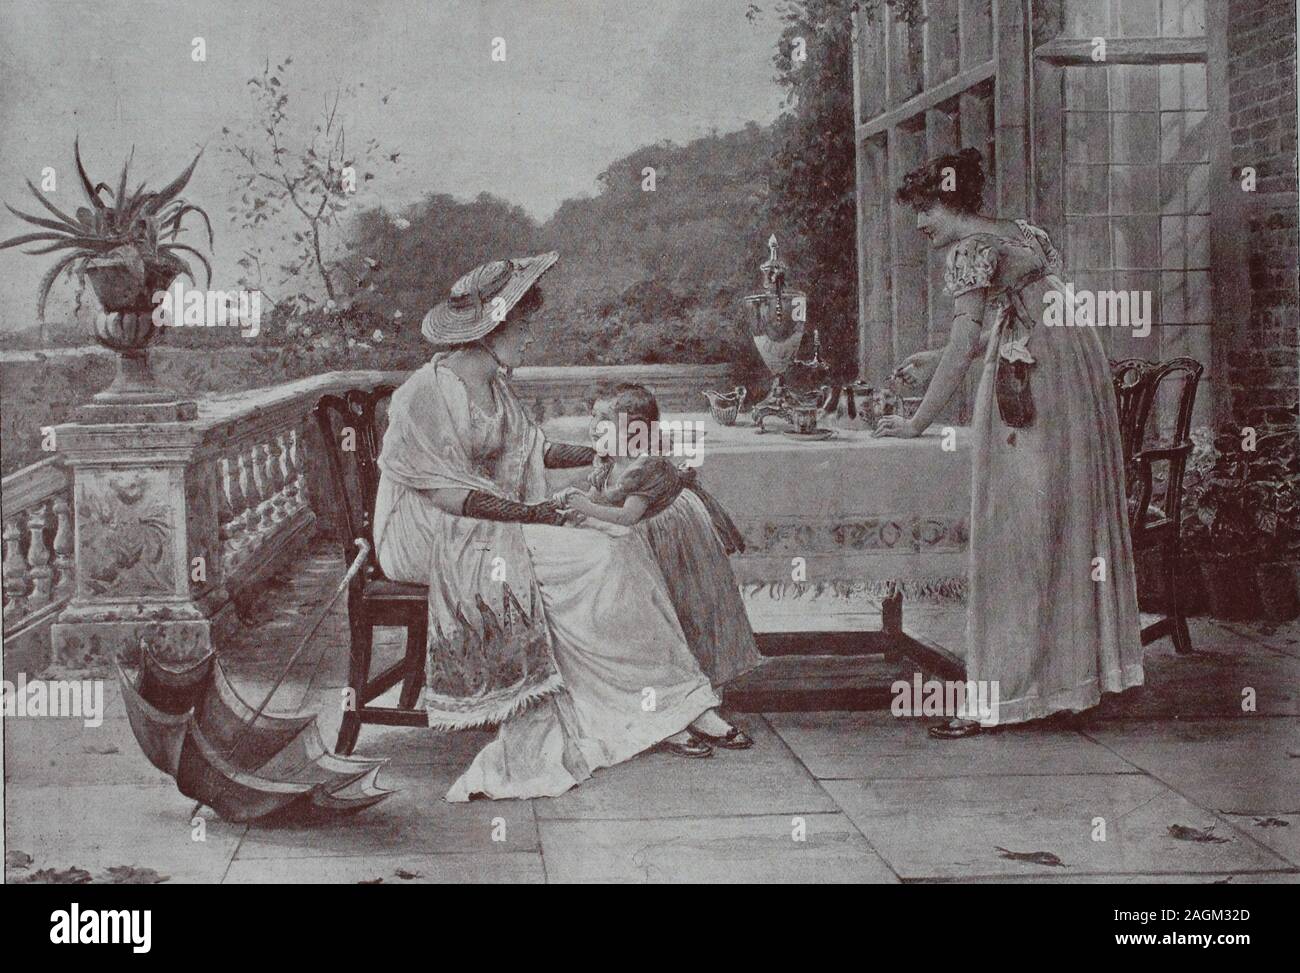 Auf der Terrasse, zwei Frauen und ein kleines Mädchen, decken den Tisch, original Drucken aus dem Jahr 1899, auf der Terrasse, zwei Frauen mit einem kleinen Mädchen, decken den Kaffeetisch, Reproduktion einer Originalvorlage aus dem 19. Jahrhundert, digital verbessert Stockfoto